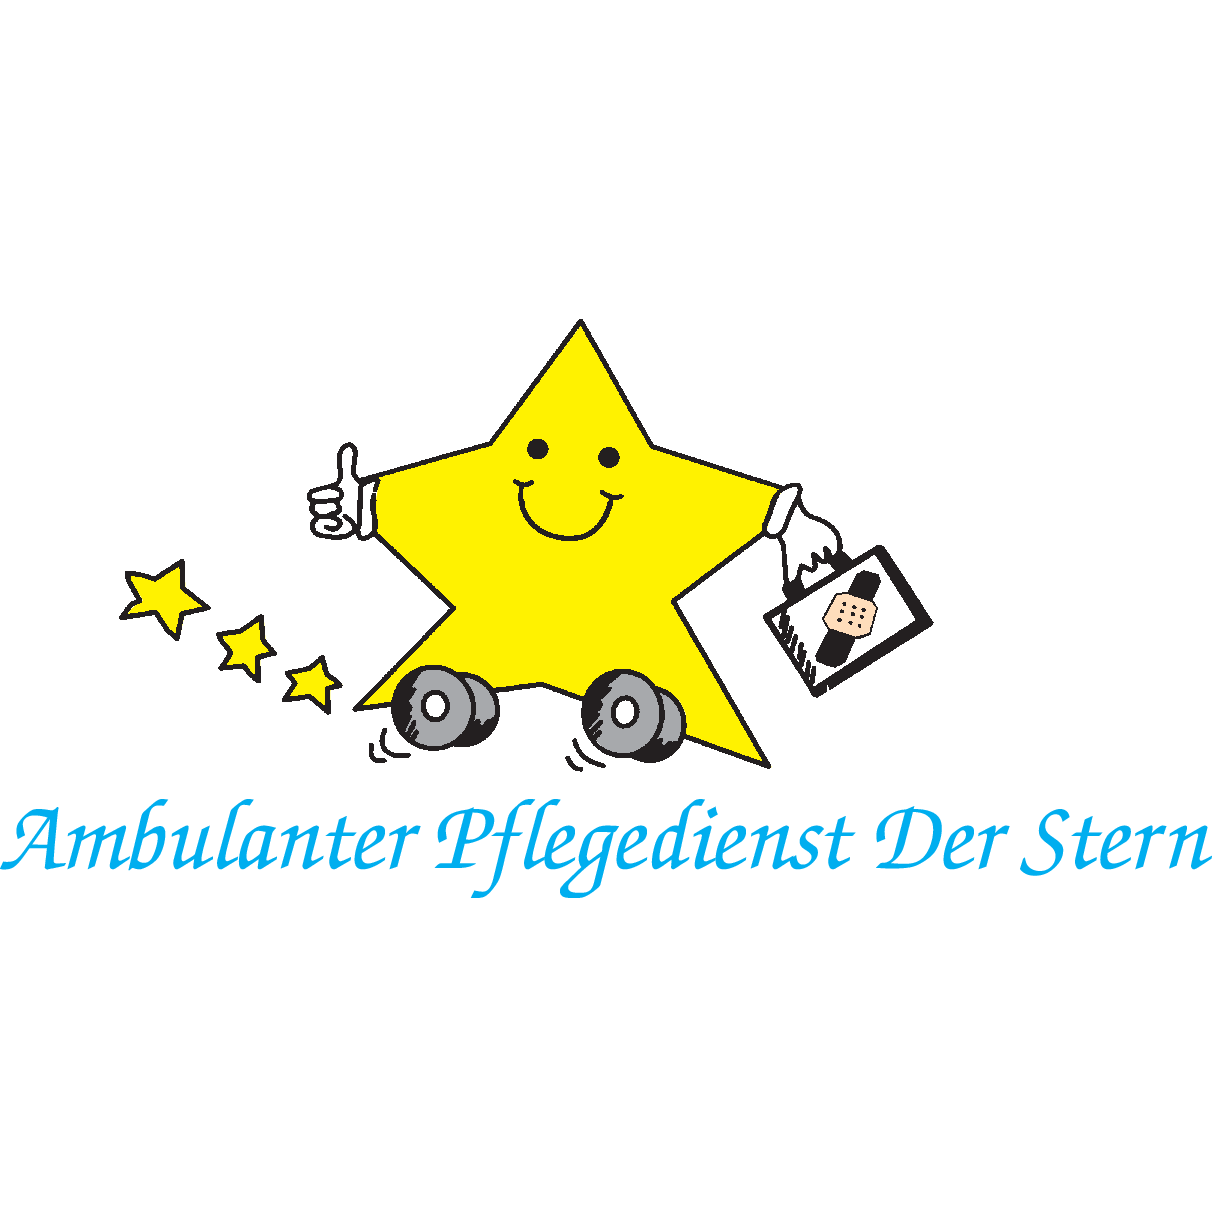 Ambulanter Pflegedienst Der Stern in Ursensollen - Logo